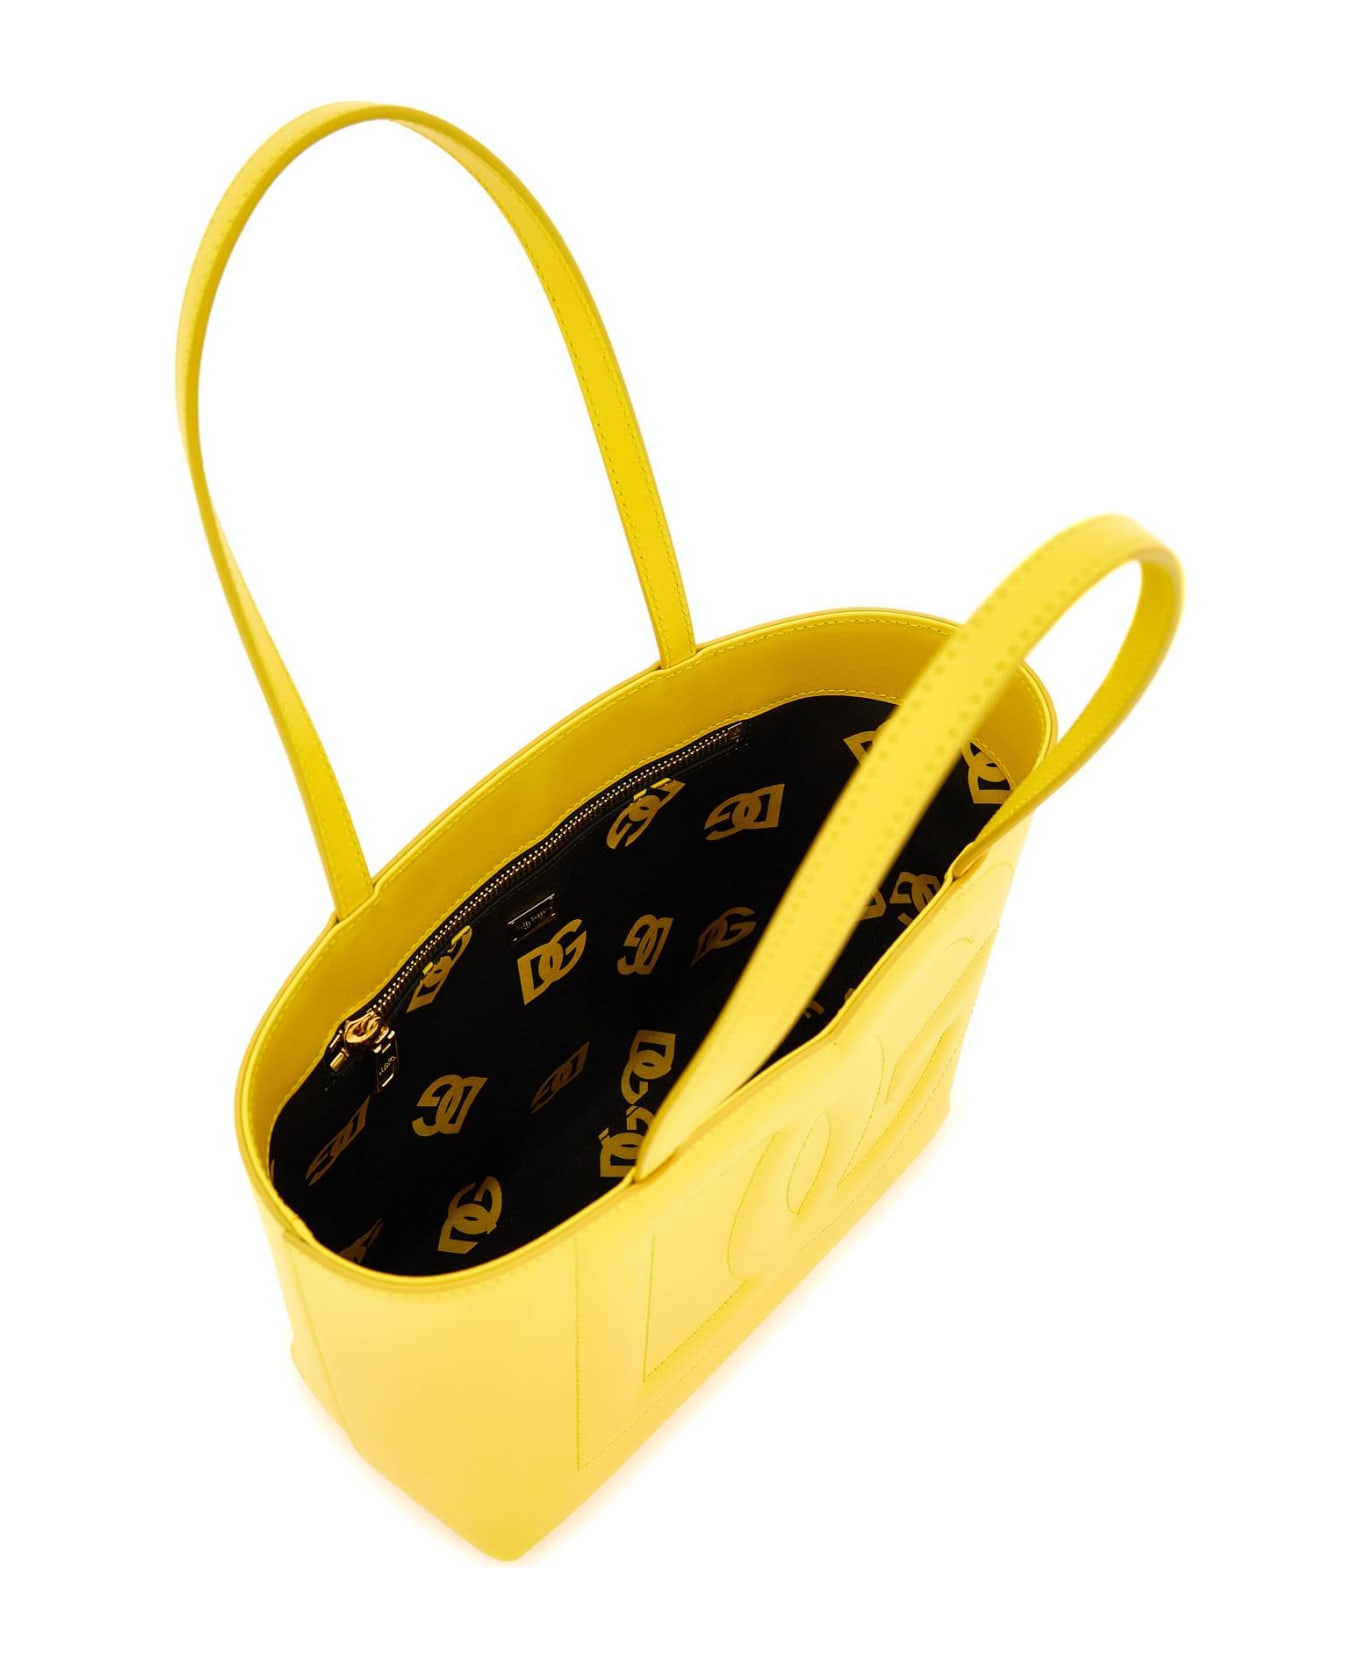 Dolce & Gabbana Logo Shopping Bag - GIALLO ORO (Yellow)